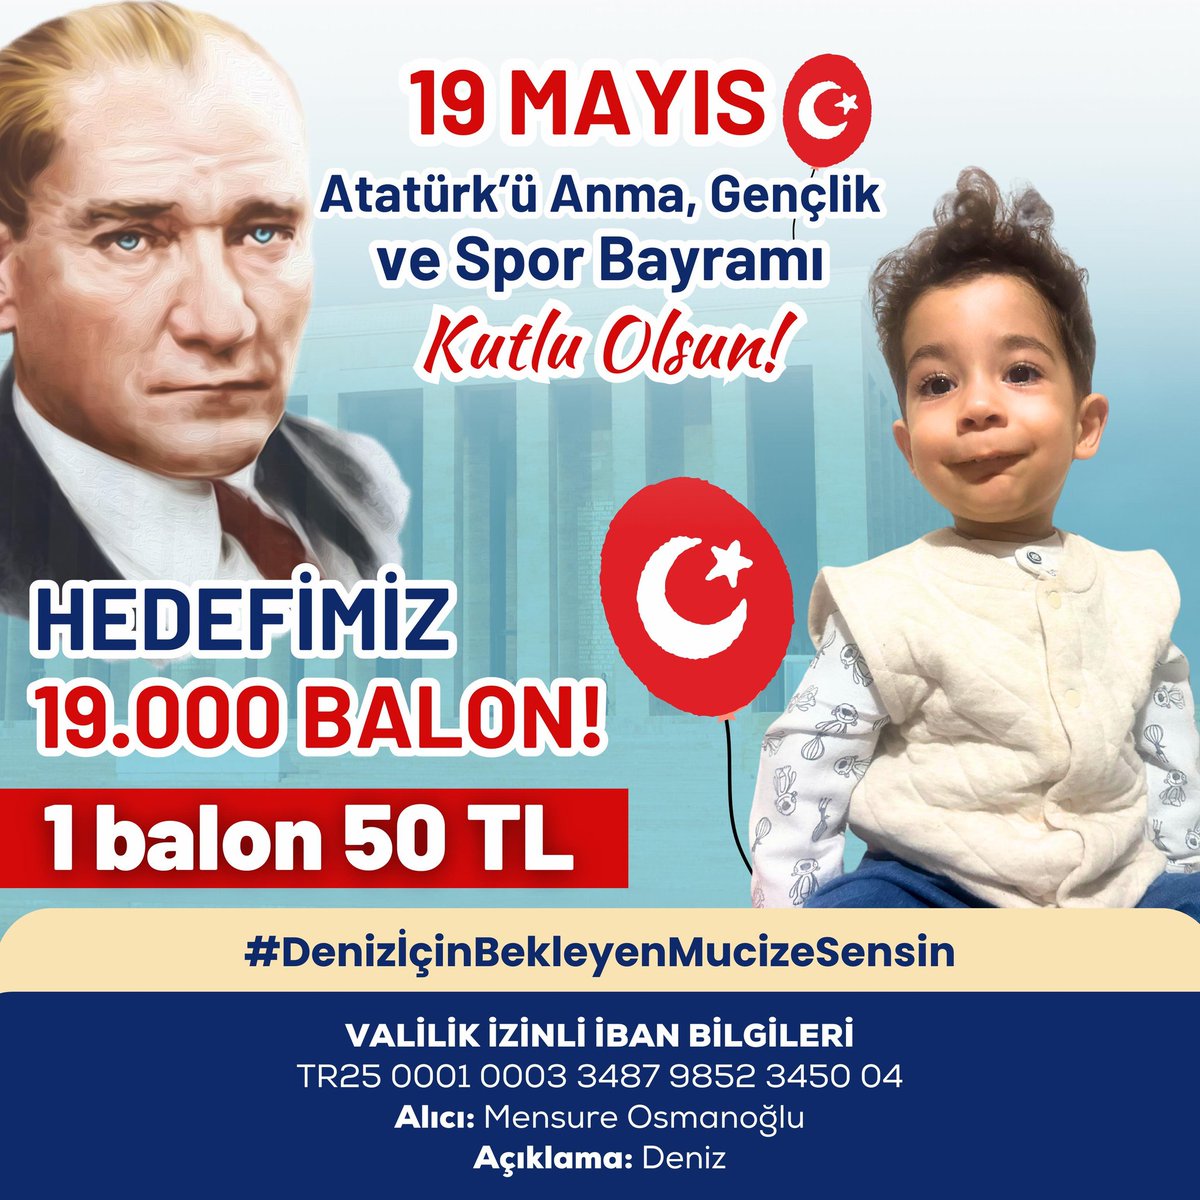 19 Mayıs Atatürk'ü Anma, Gençlik ve Spor Bayramı Kutlu olsun, Bağımsızlığa atılan ilk adım Samsun’dan atıldı 🇹🇷🇹🇷 Bu özel günde deniz'imize bir balon alırmısınız Geleceğimizin evlatlarına sahip çıkalım 🙏 #19mayıs #AtatürküAnma #Atamİzindeyiz #AtatürküAnmaGençlikveSporBayramı